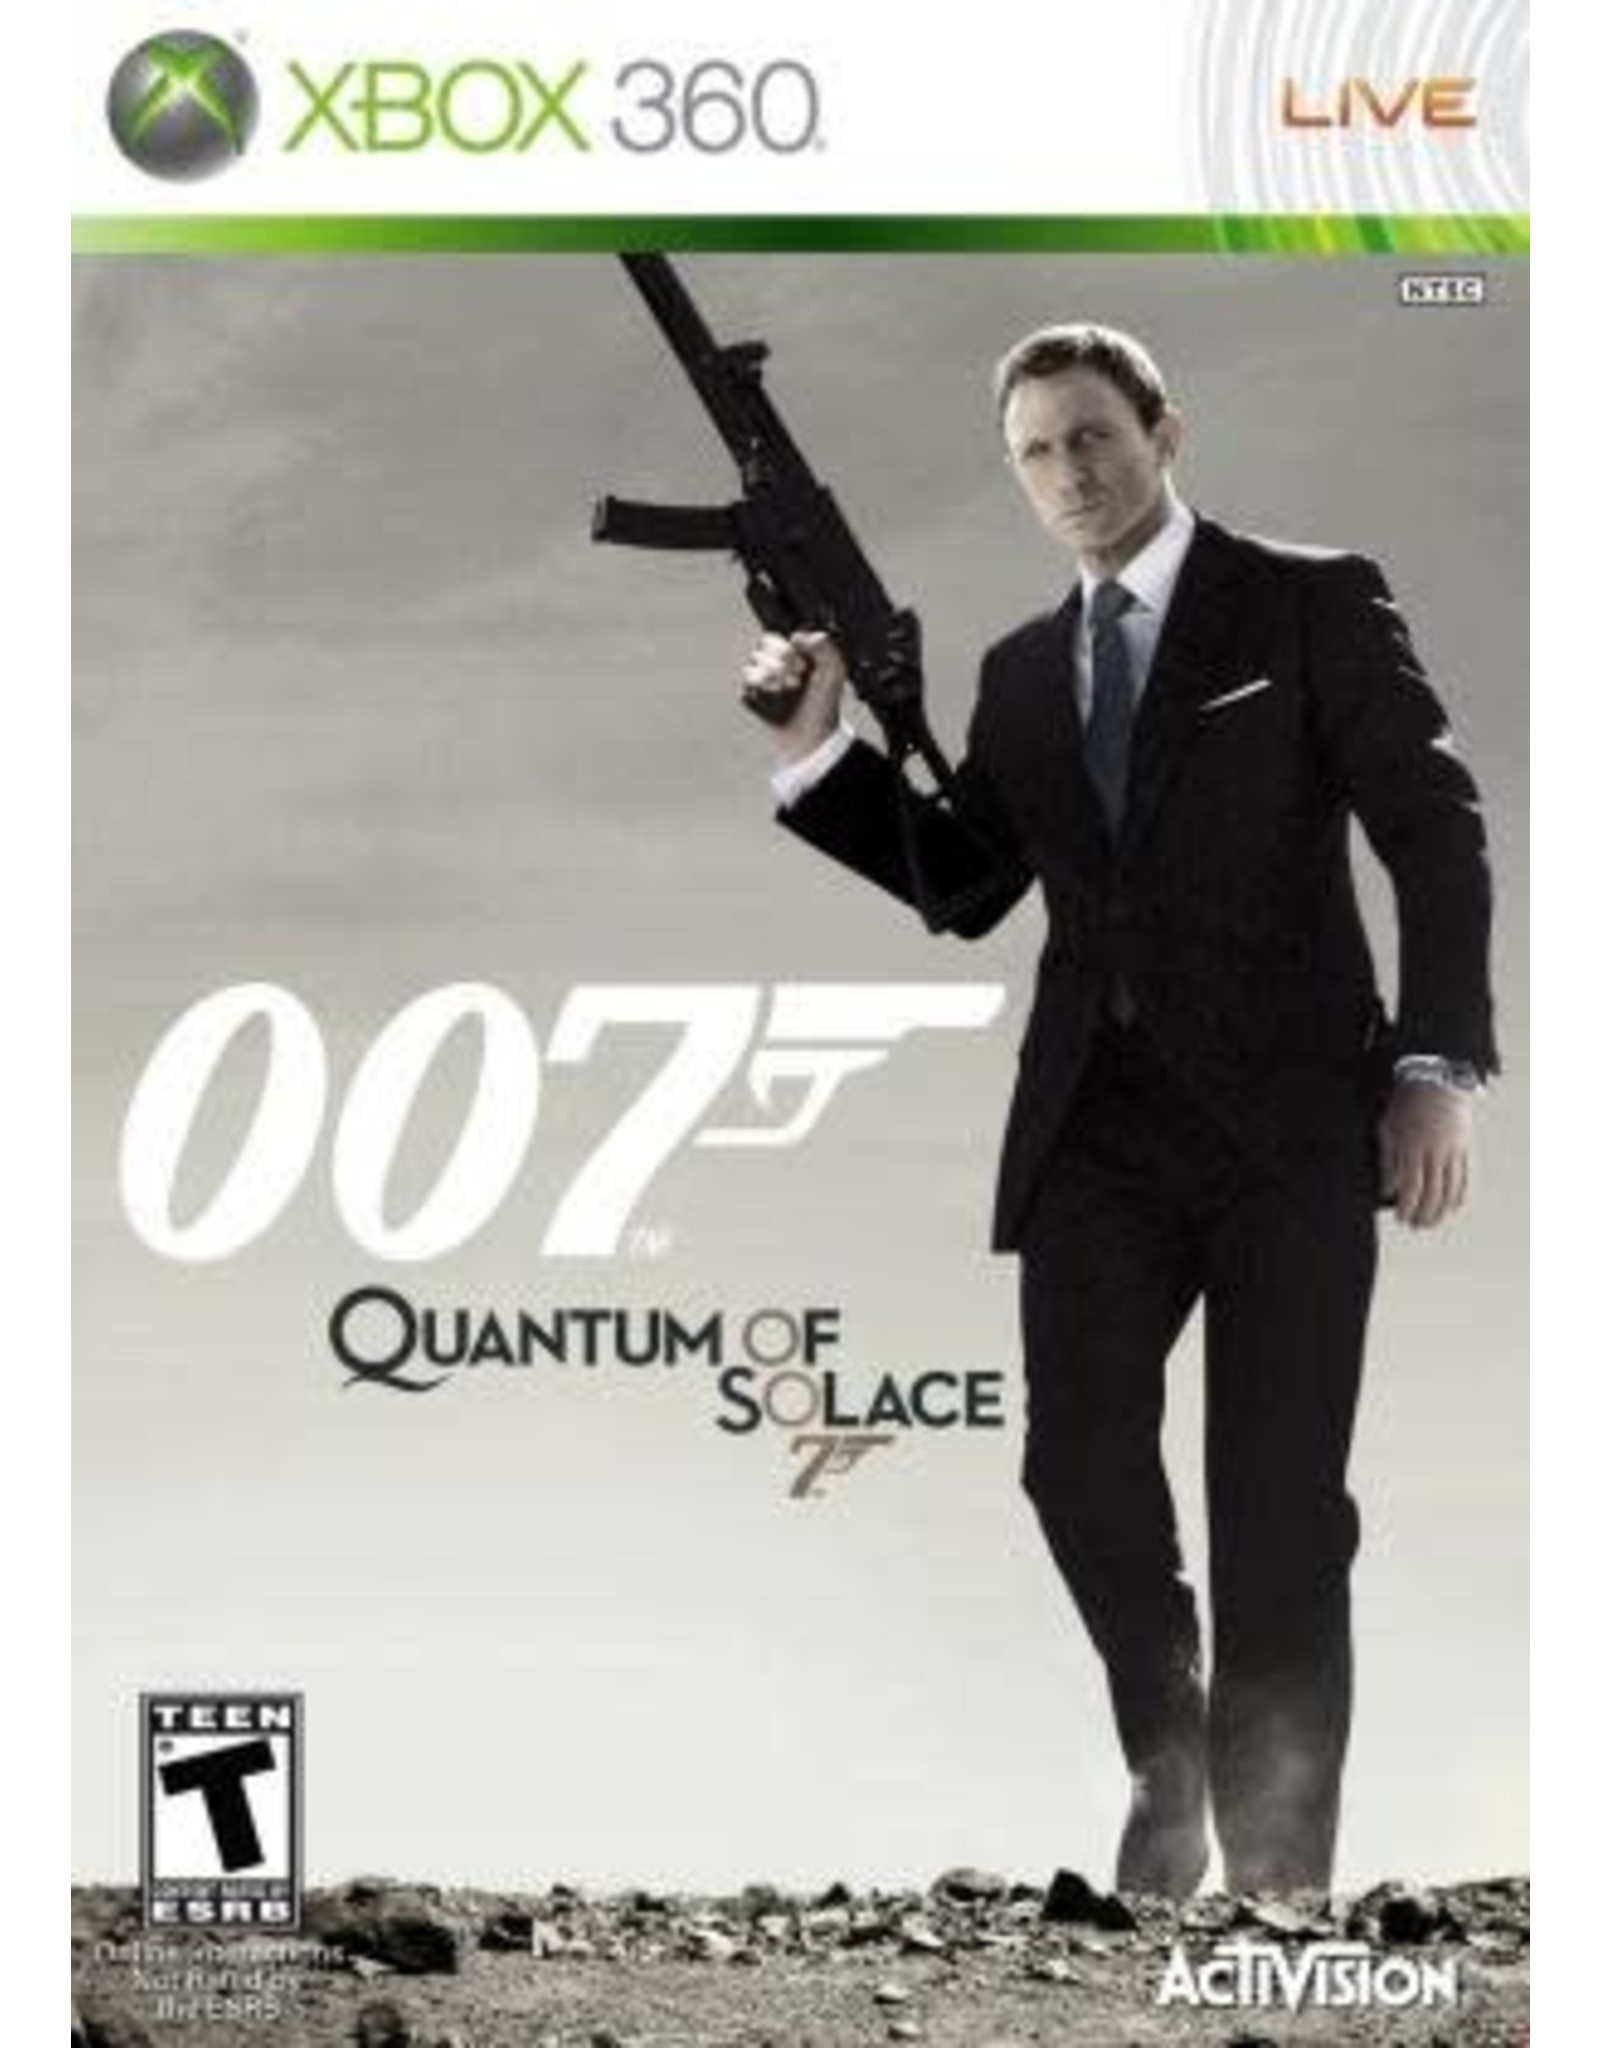 Xbox 360 007 Quantum of Solace (CiB)